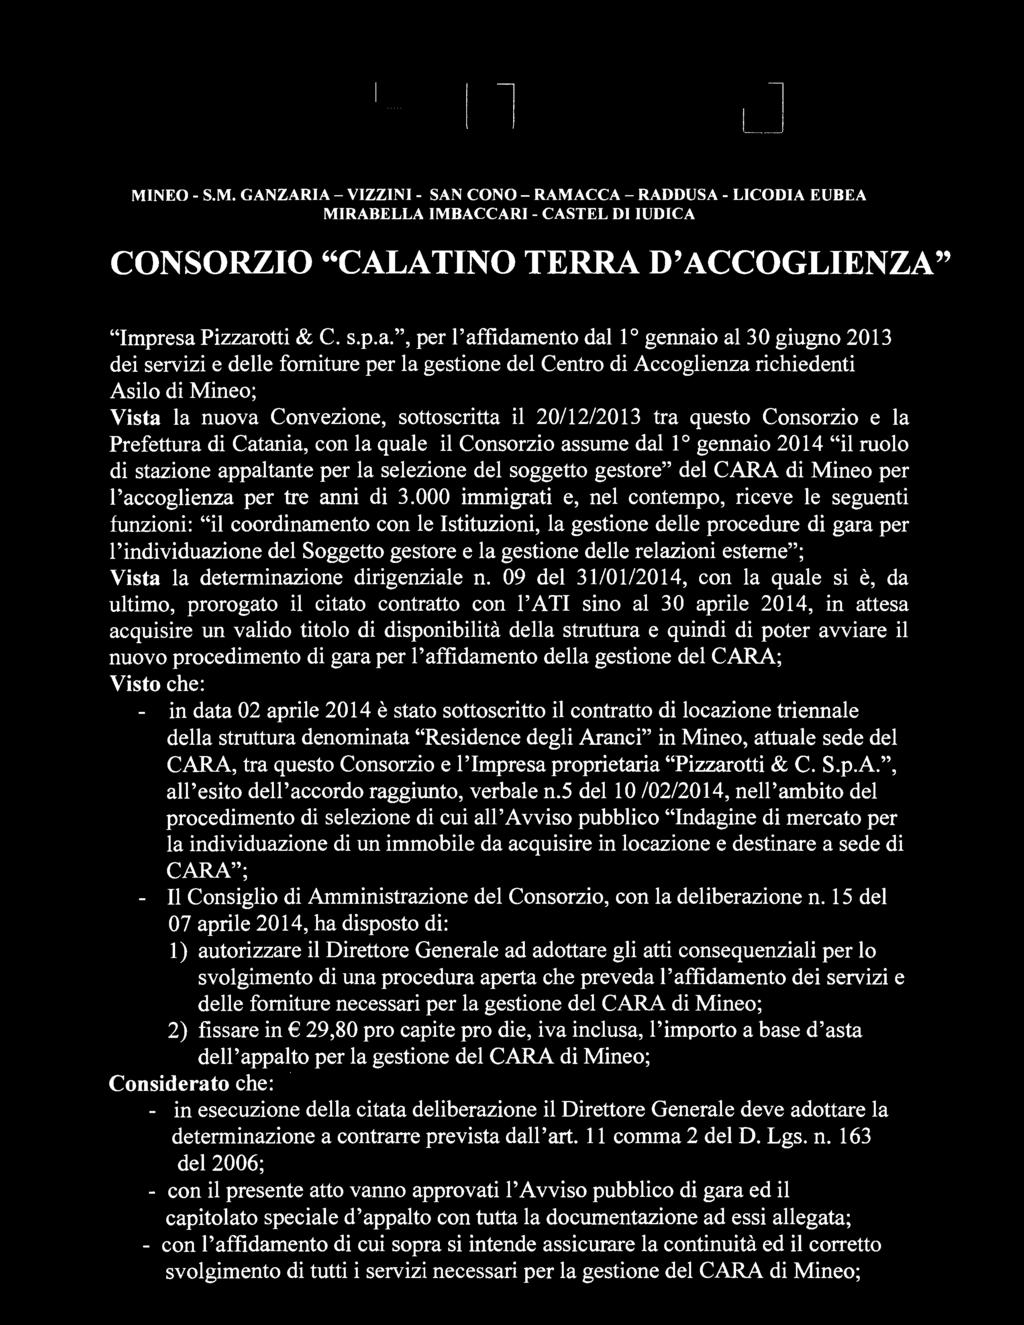 20/12/2013 tra questo Consorzio e la Prefettura di Catania, con la quale il Consorzio assume dal 1 gennaio 2014 il ruolo di stazione appaltante per la selezione del soggetto gestore del CARA di Mineo